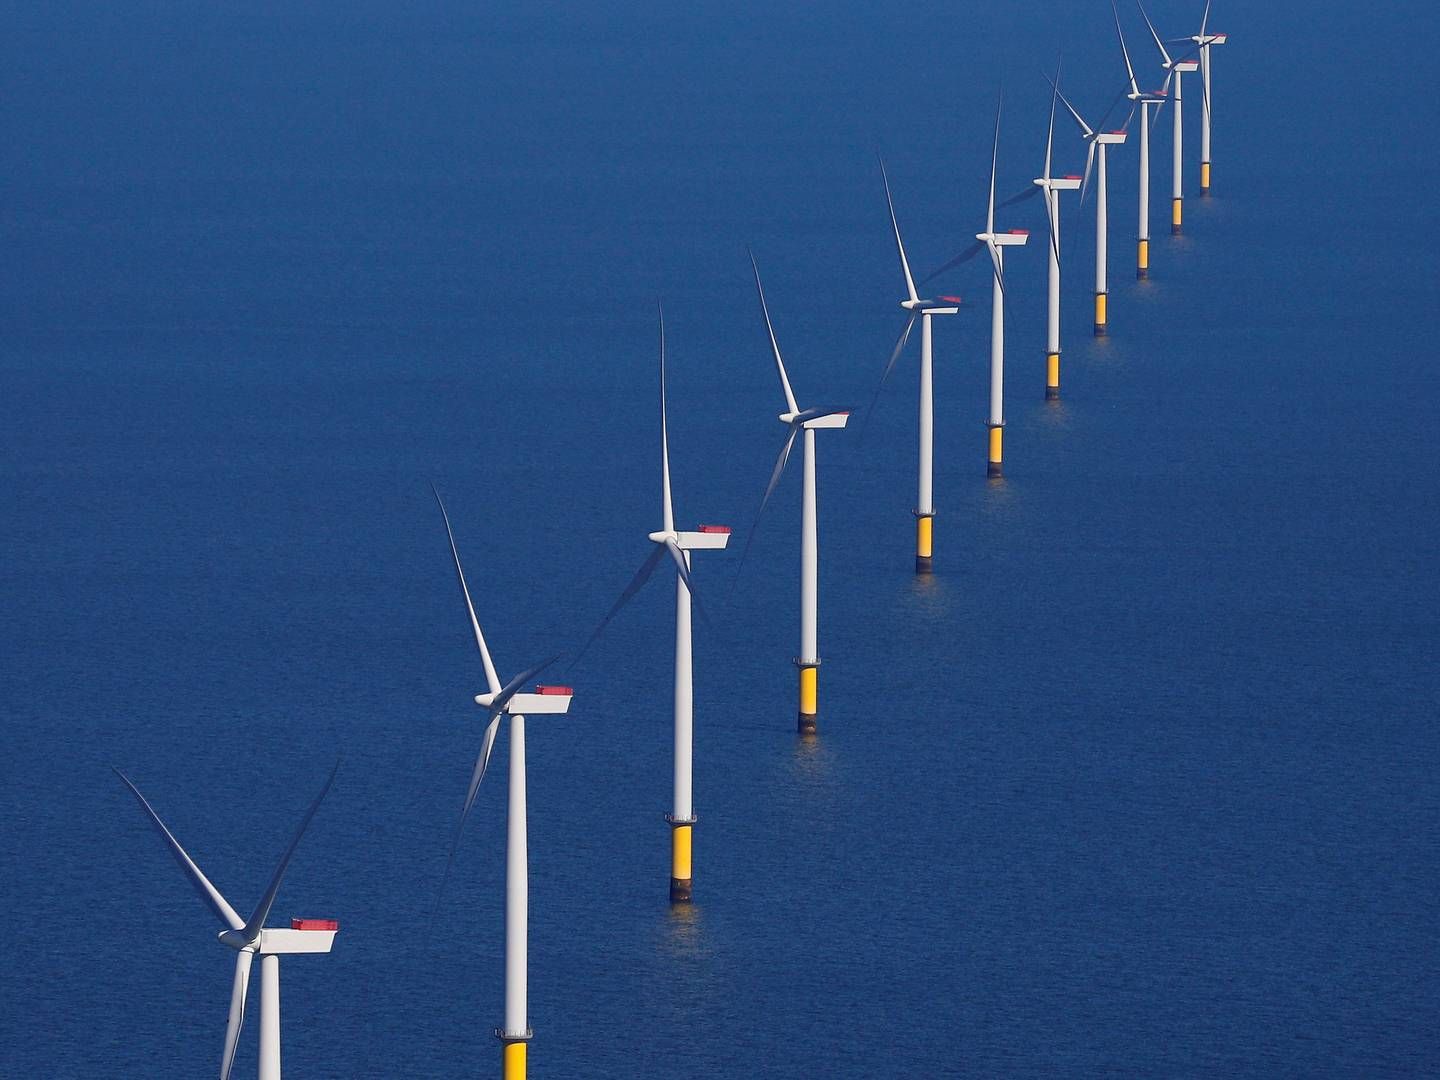 Det er EU-Kommissionens plan at udbygge den nuværende kapacitet for havvindmøller i Europa 25 gange inden 2050. Det fremgår af den offshore-strategi Kommissionen fremlægger onsdag. Her ses Walney Wind Farms, verdens næststørste havvindmøllepark, der ligger i Det Irske Hav, og drives af Ørsted. | Foto: Phil Noble/Reuters/Ritzau Scanpix